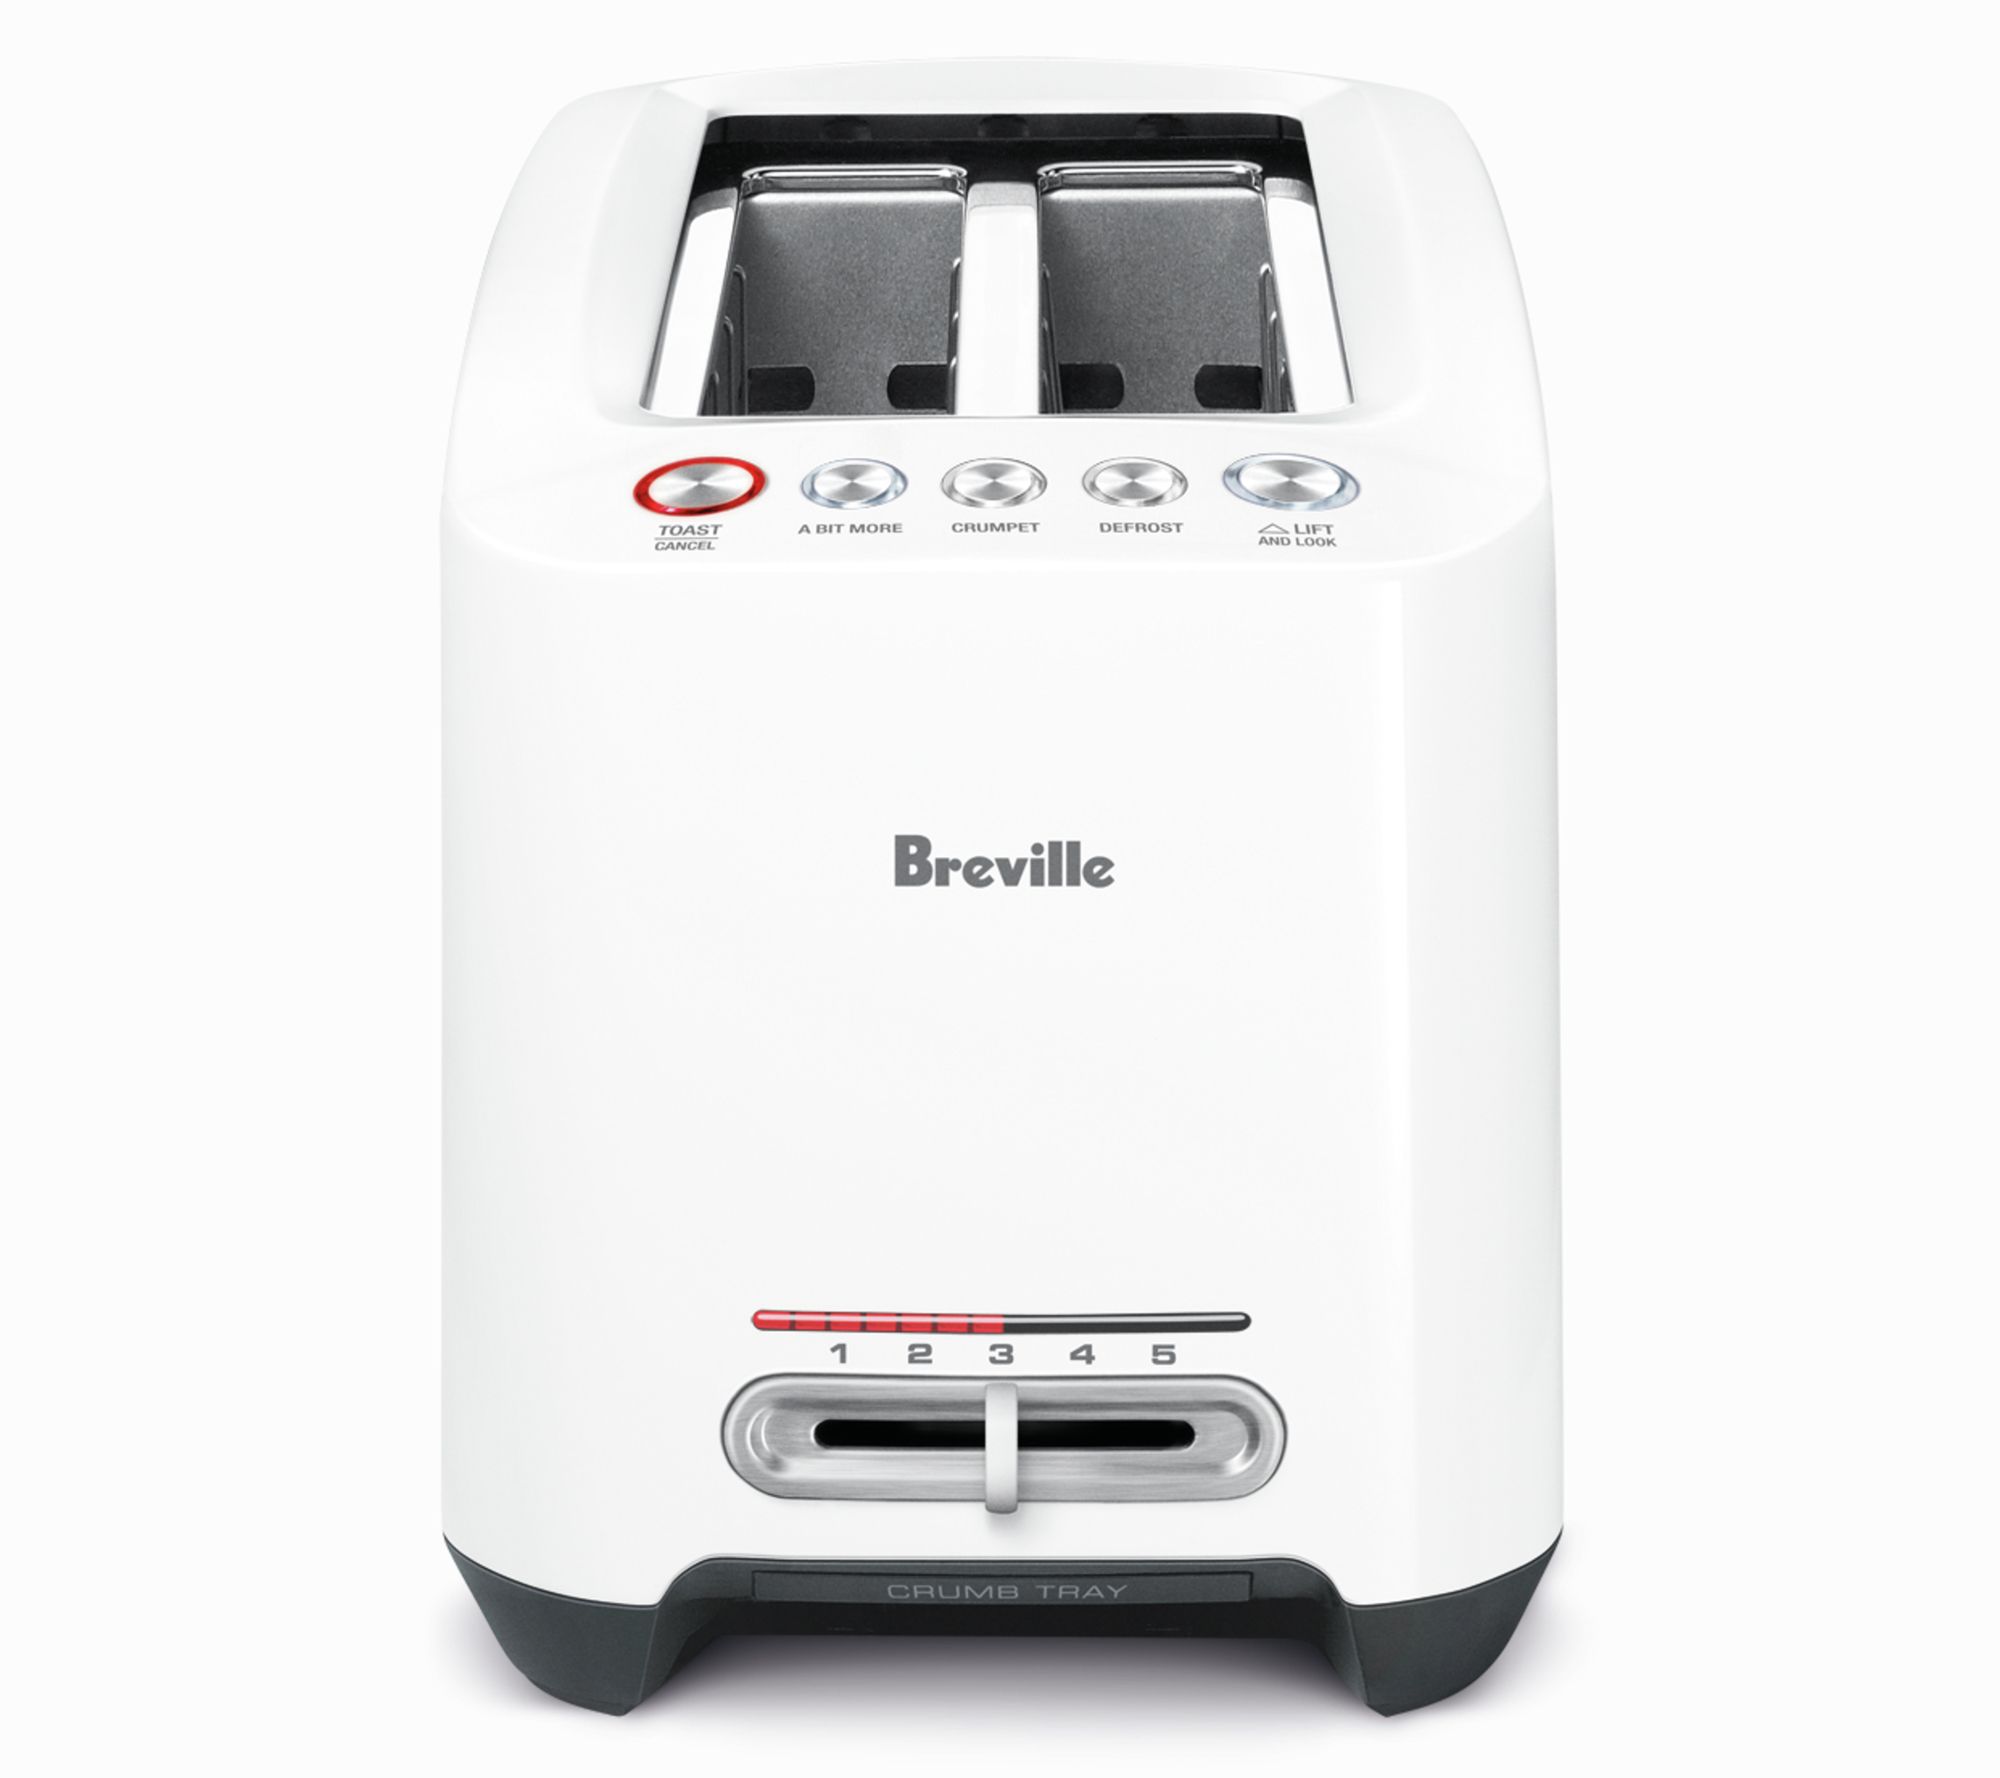 Breville Bit-More 2-Slice Toaster 